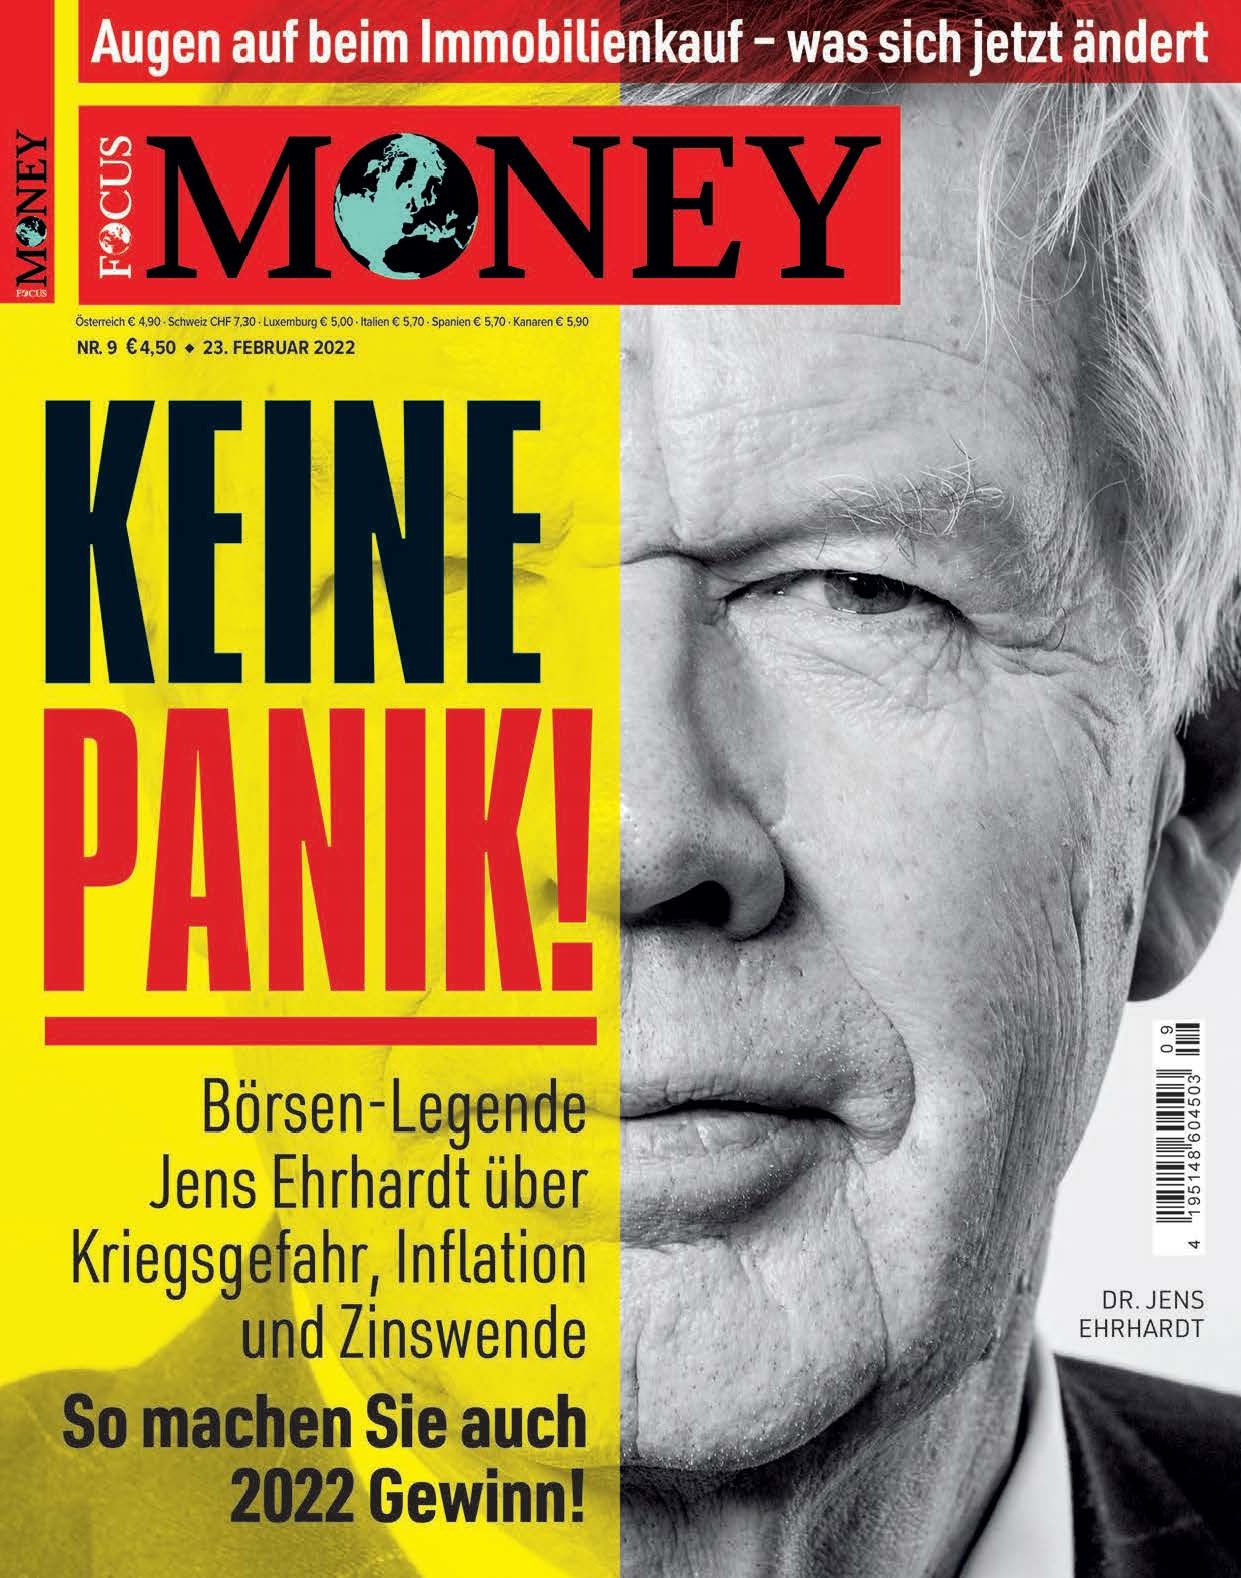 FOCUS-MONEY FOCUS MONEY – Keine Panik: Börsen-Legende Jens Ehrhardt über Kriegsgefahr, Inflation und Zinswende